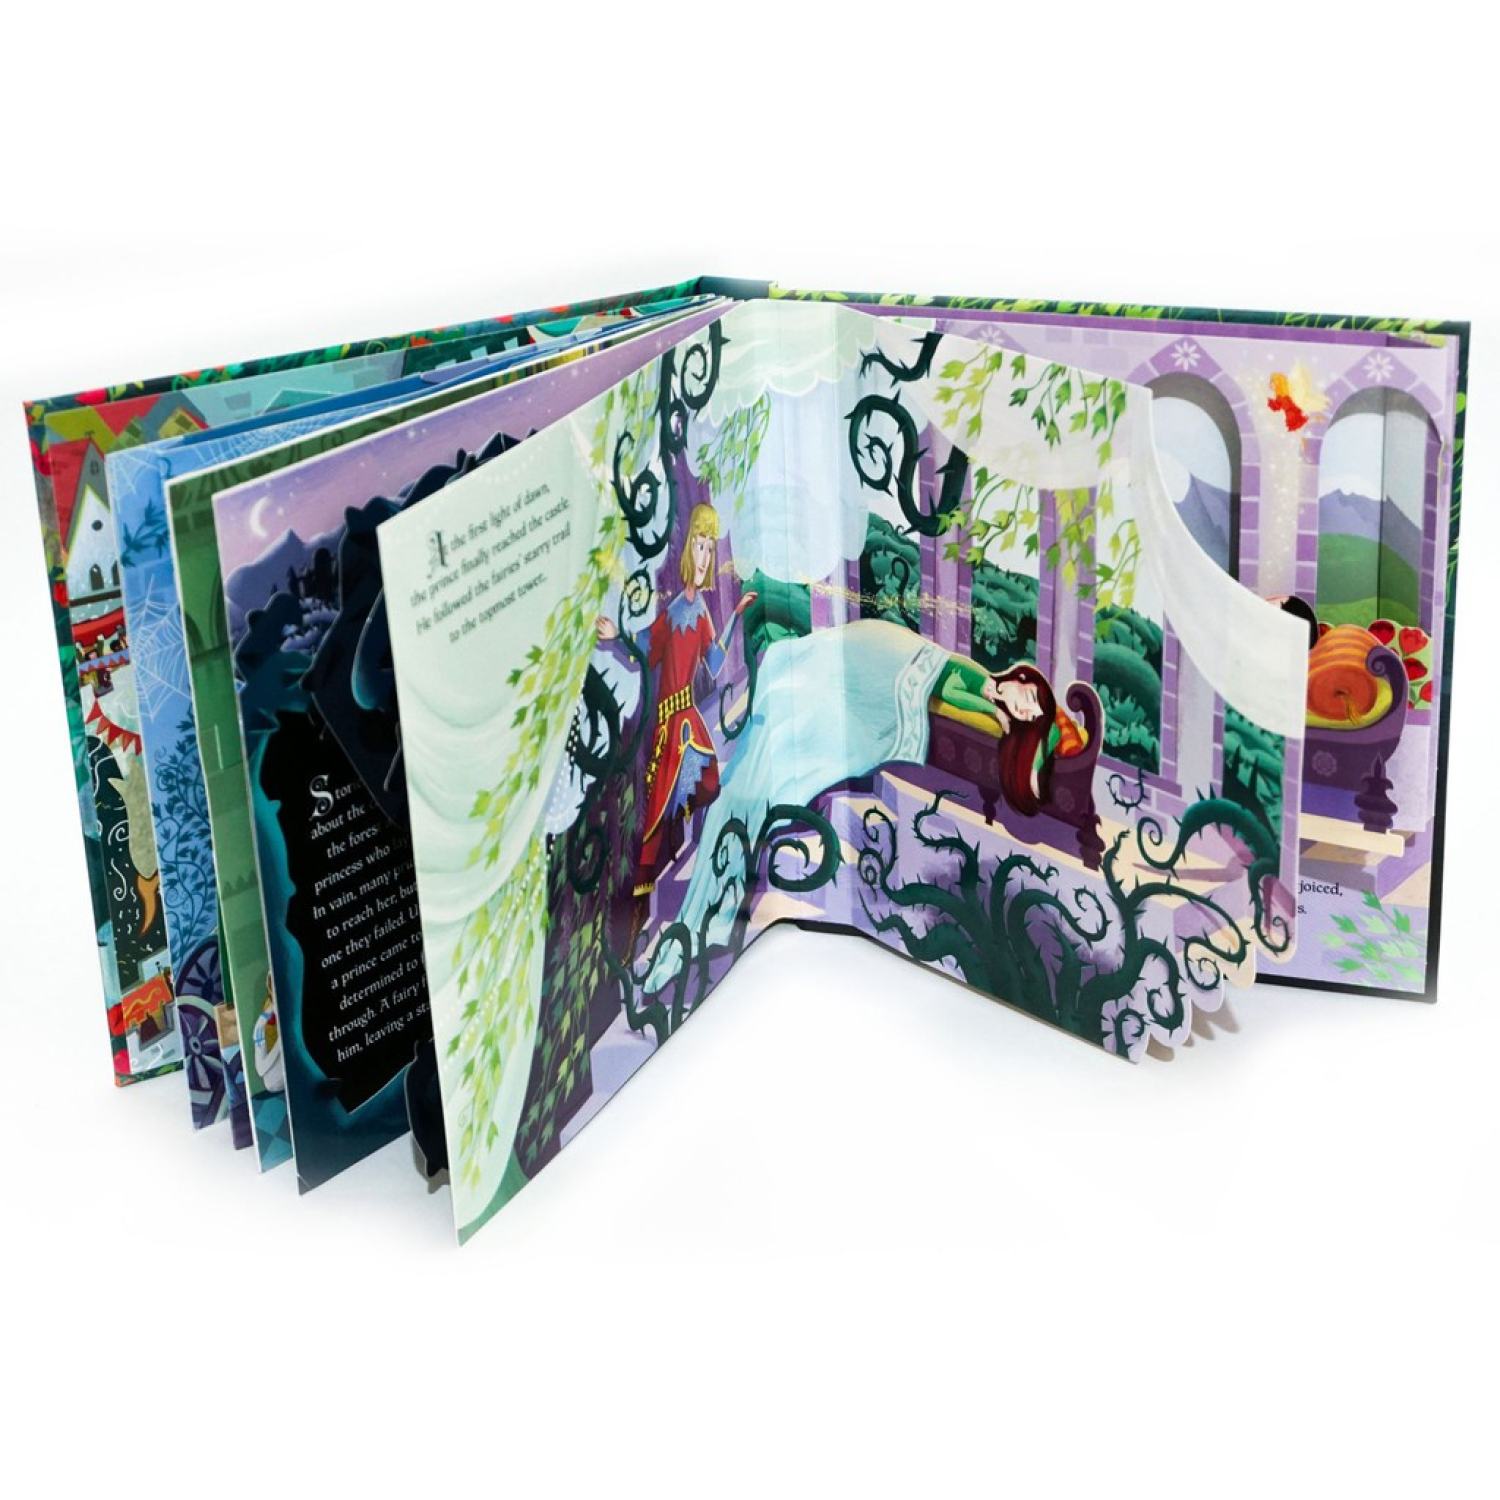 Sách tiếng Anh cho bé dạng 3D Pop-up của Usborne quyển Sleeping Beauty (Công chúa ngủ trong rừng), Dinosaurs, Birds, Garden, Seasons, Cinderella (Cô bé Lọ Lem), Snow White (Bạch Tuyết) và Jungle